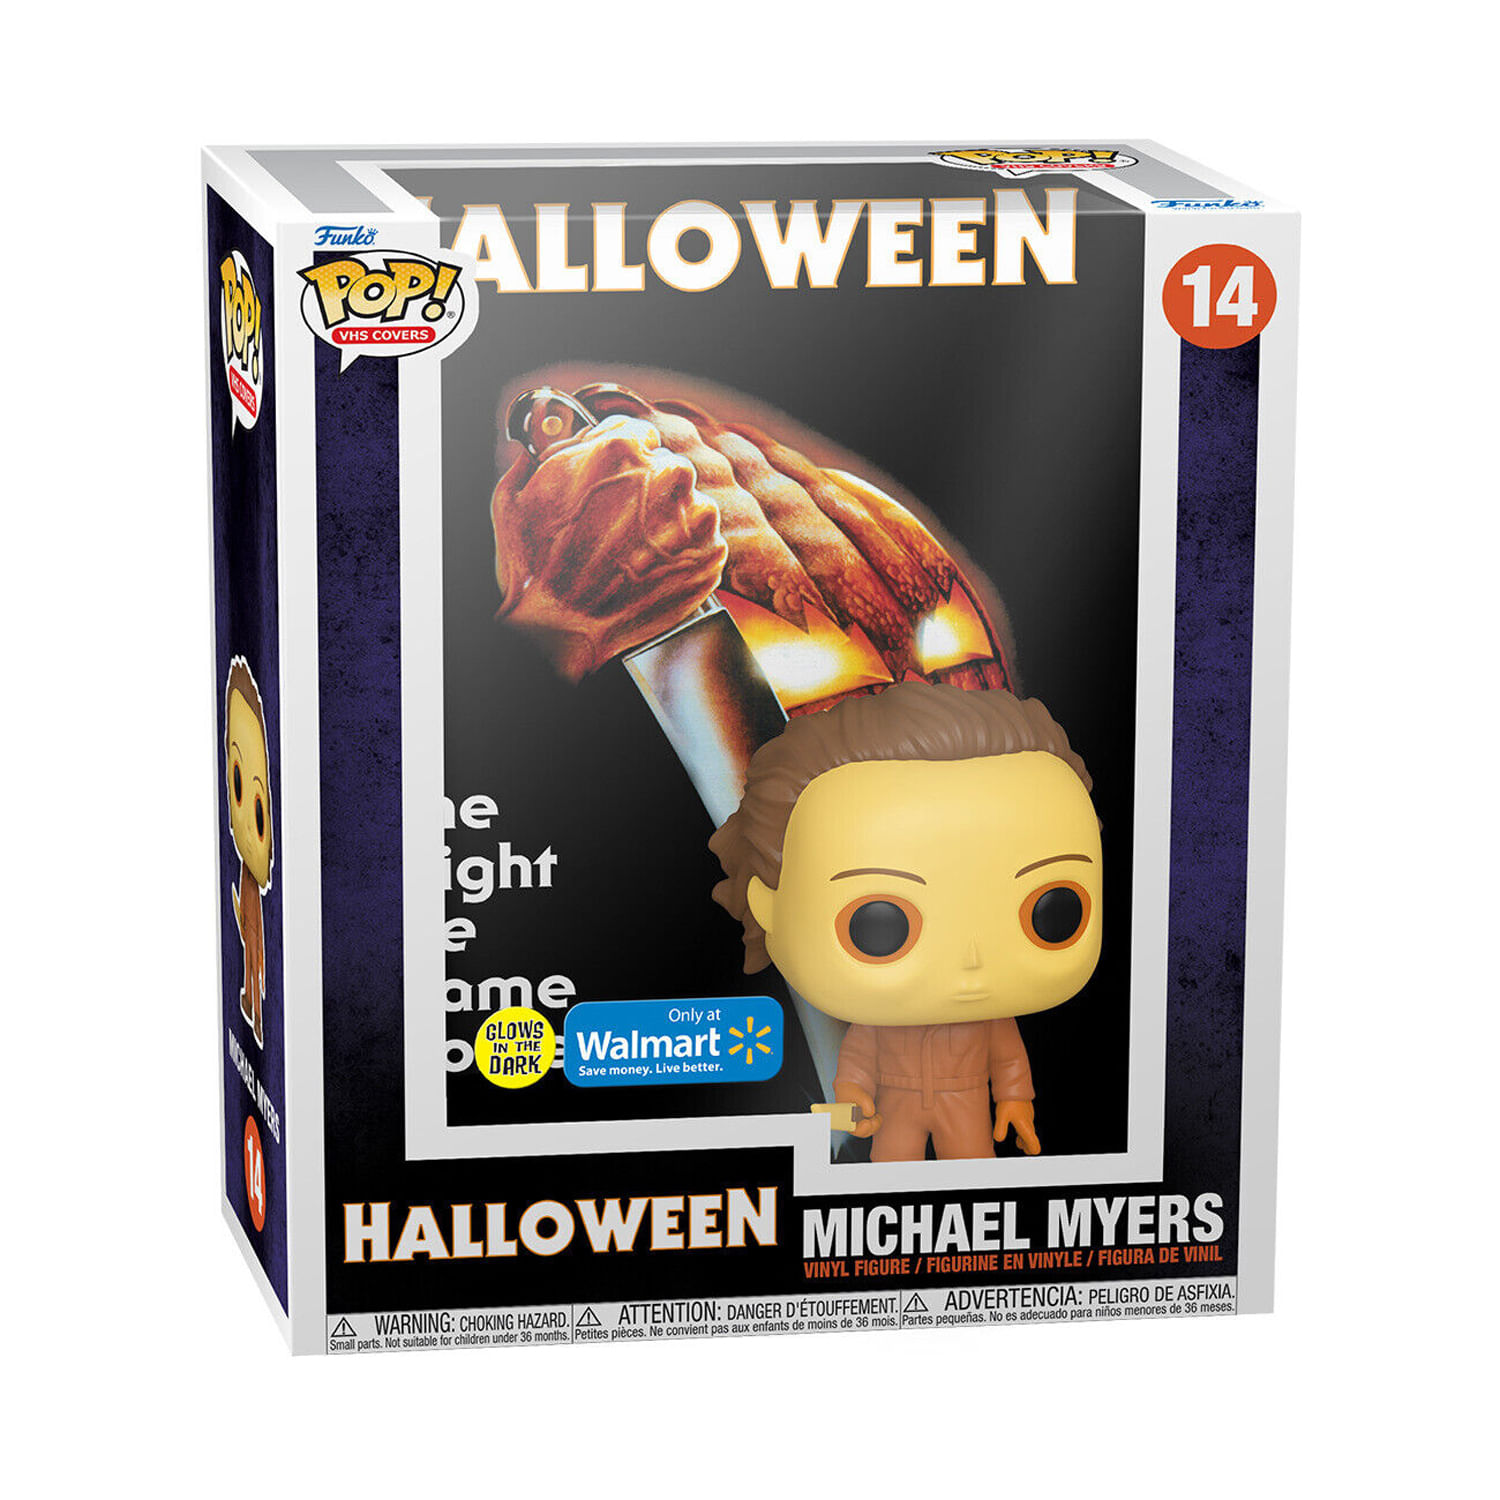 Funko Halloween Michael Myers Walmart GID 14